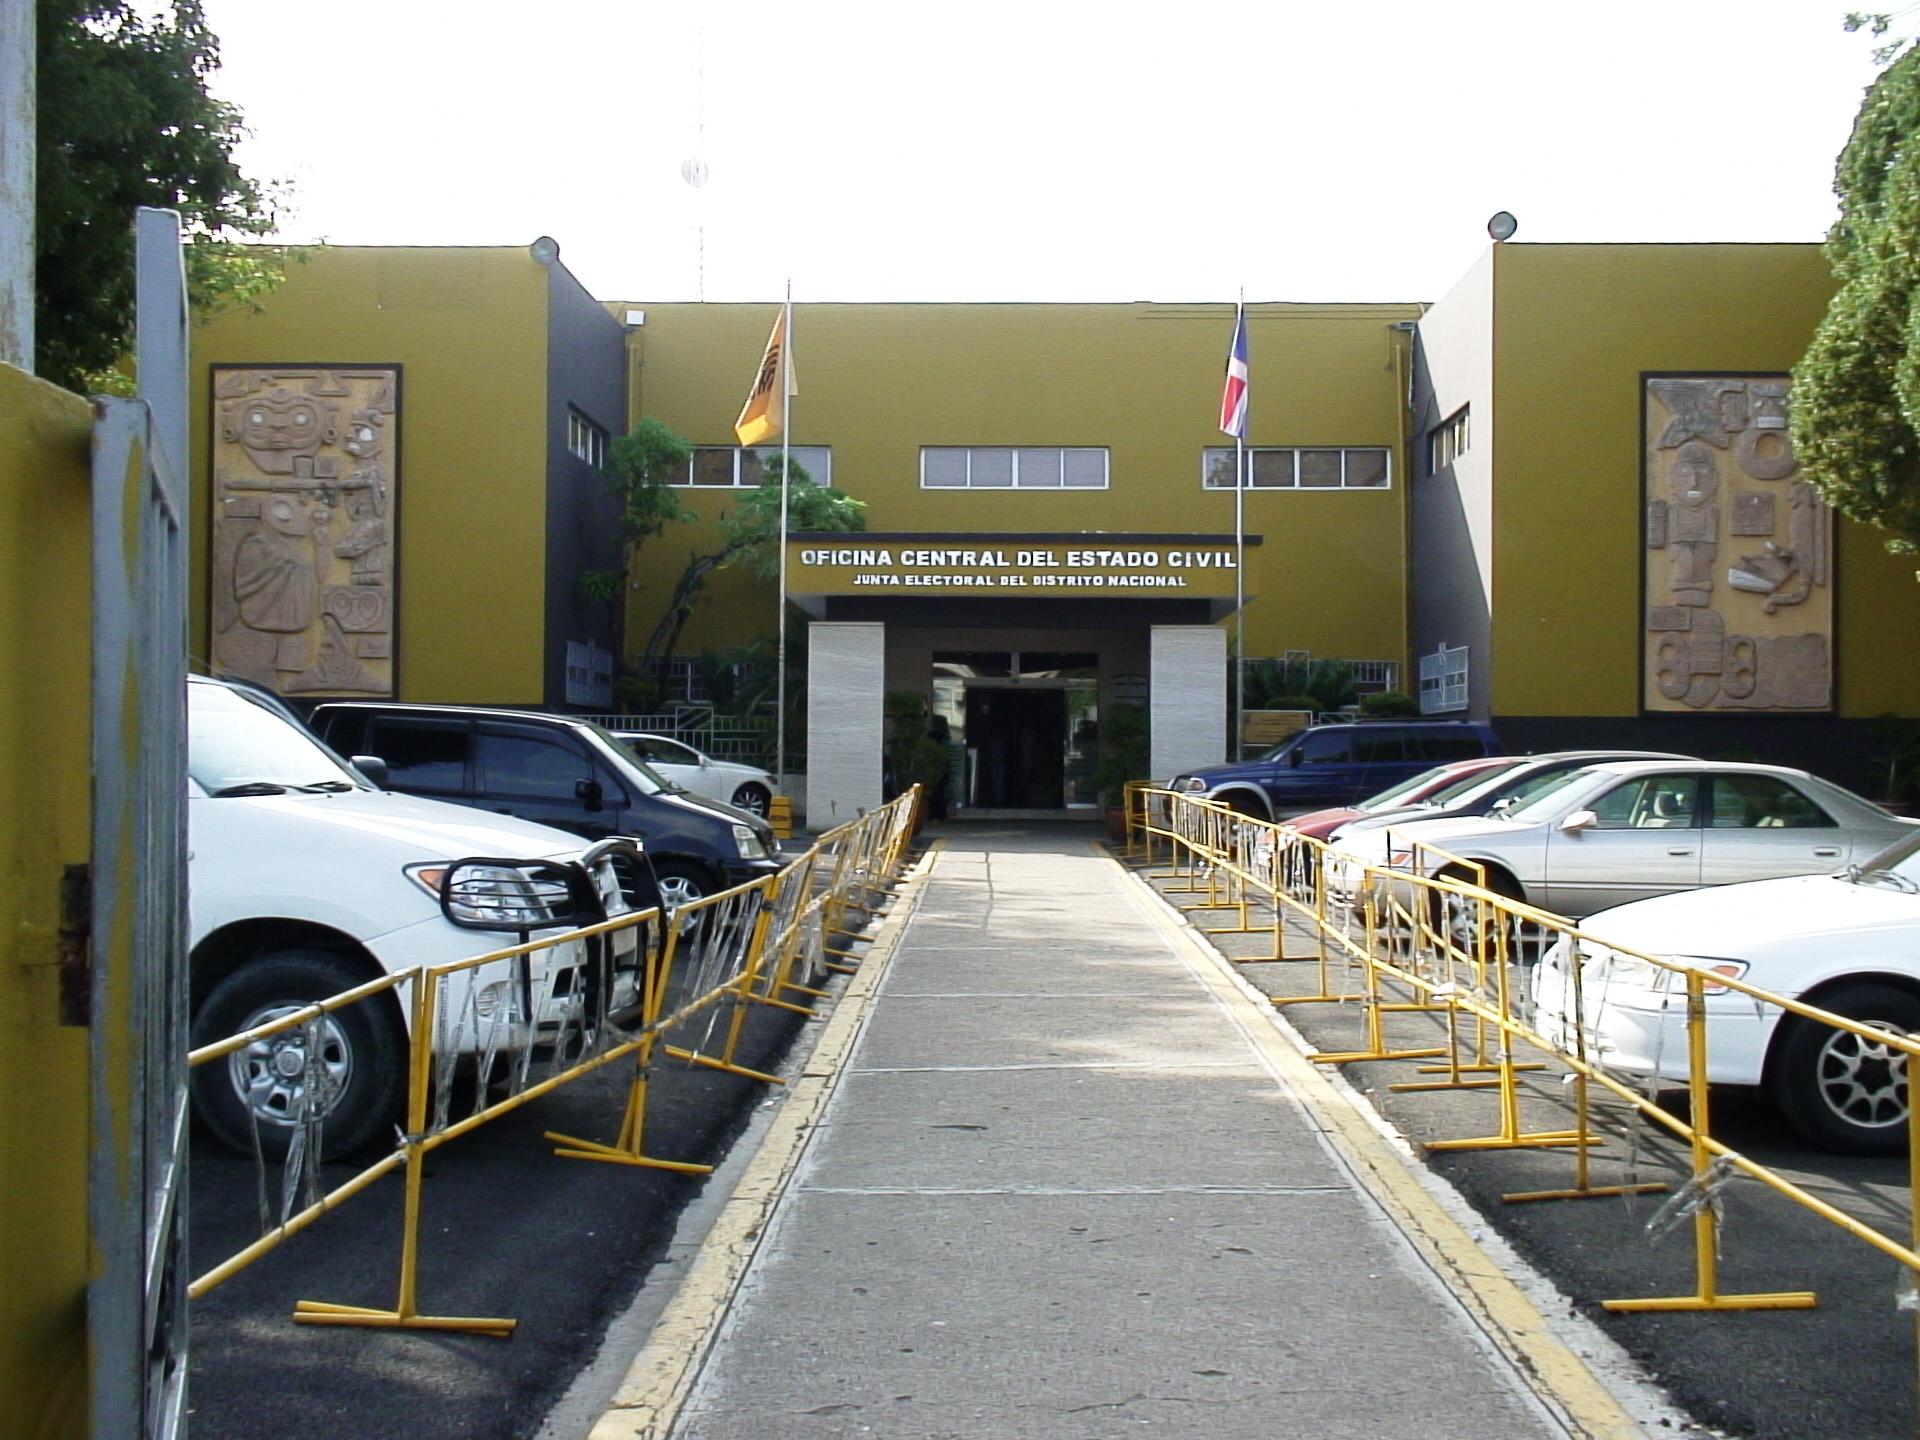 Headquarters of the Santo Domingo Central Electoral Board